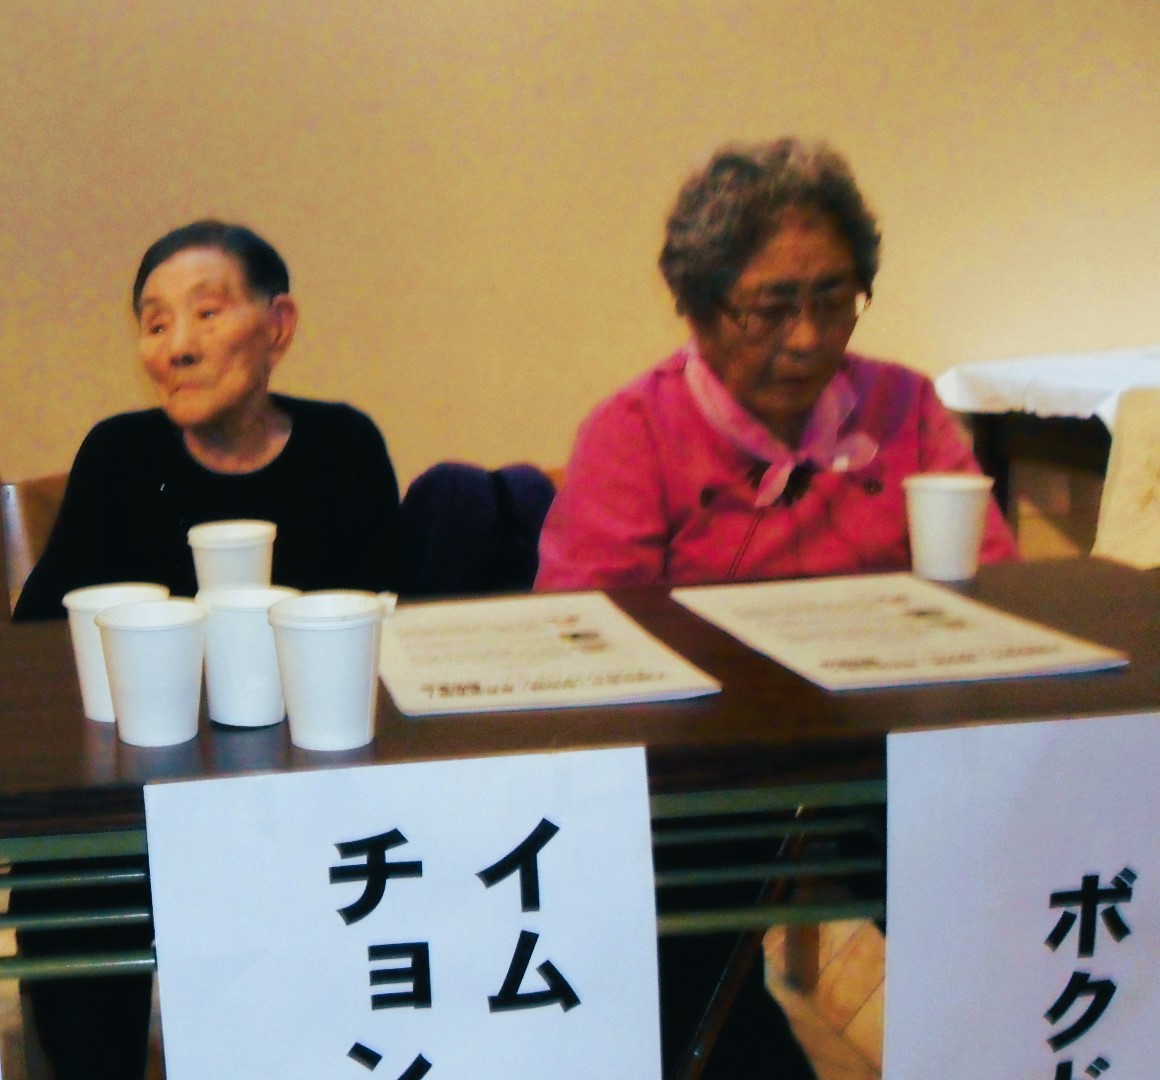 2010년 11월 26일 일본 오사카의 간사이네트워크 소속 단체 활동가들이 준비한 증언 행사에 참석한 모습 ⓒ이경희